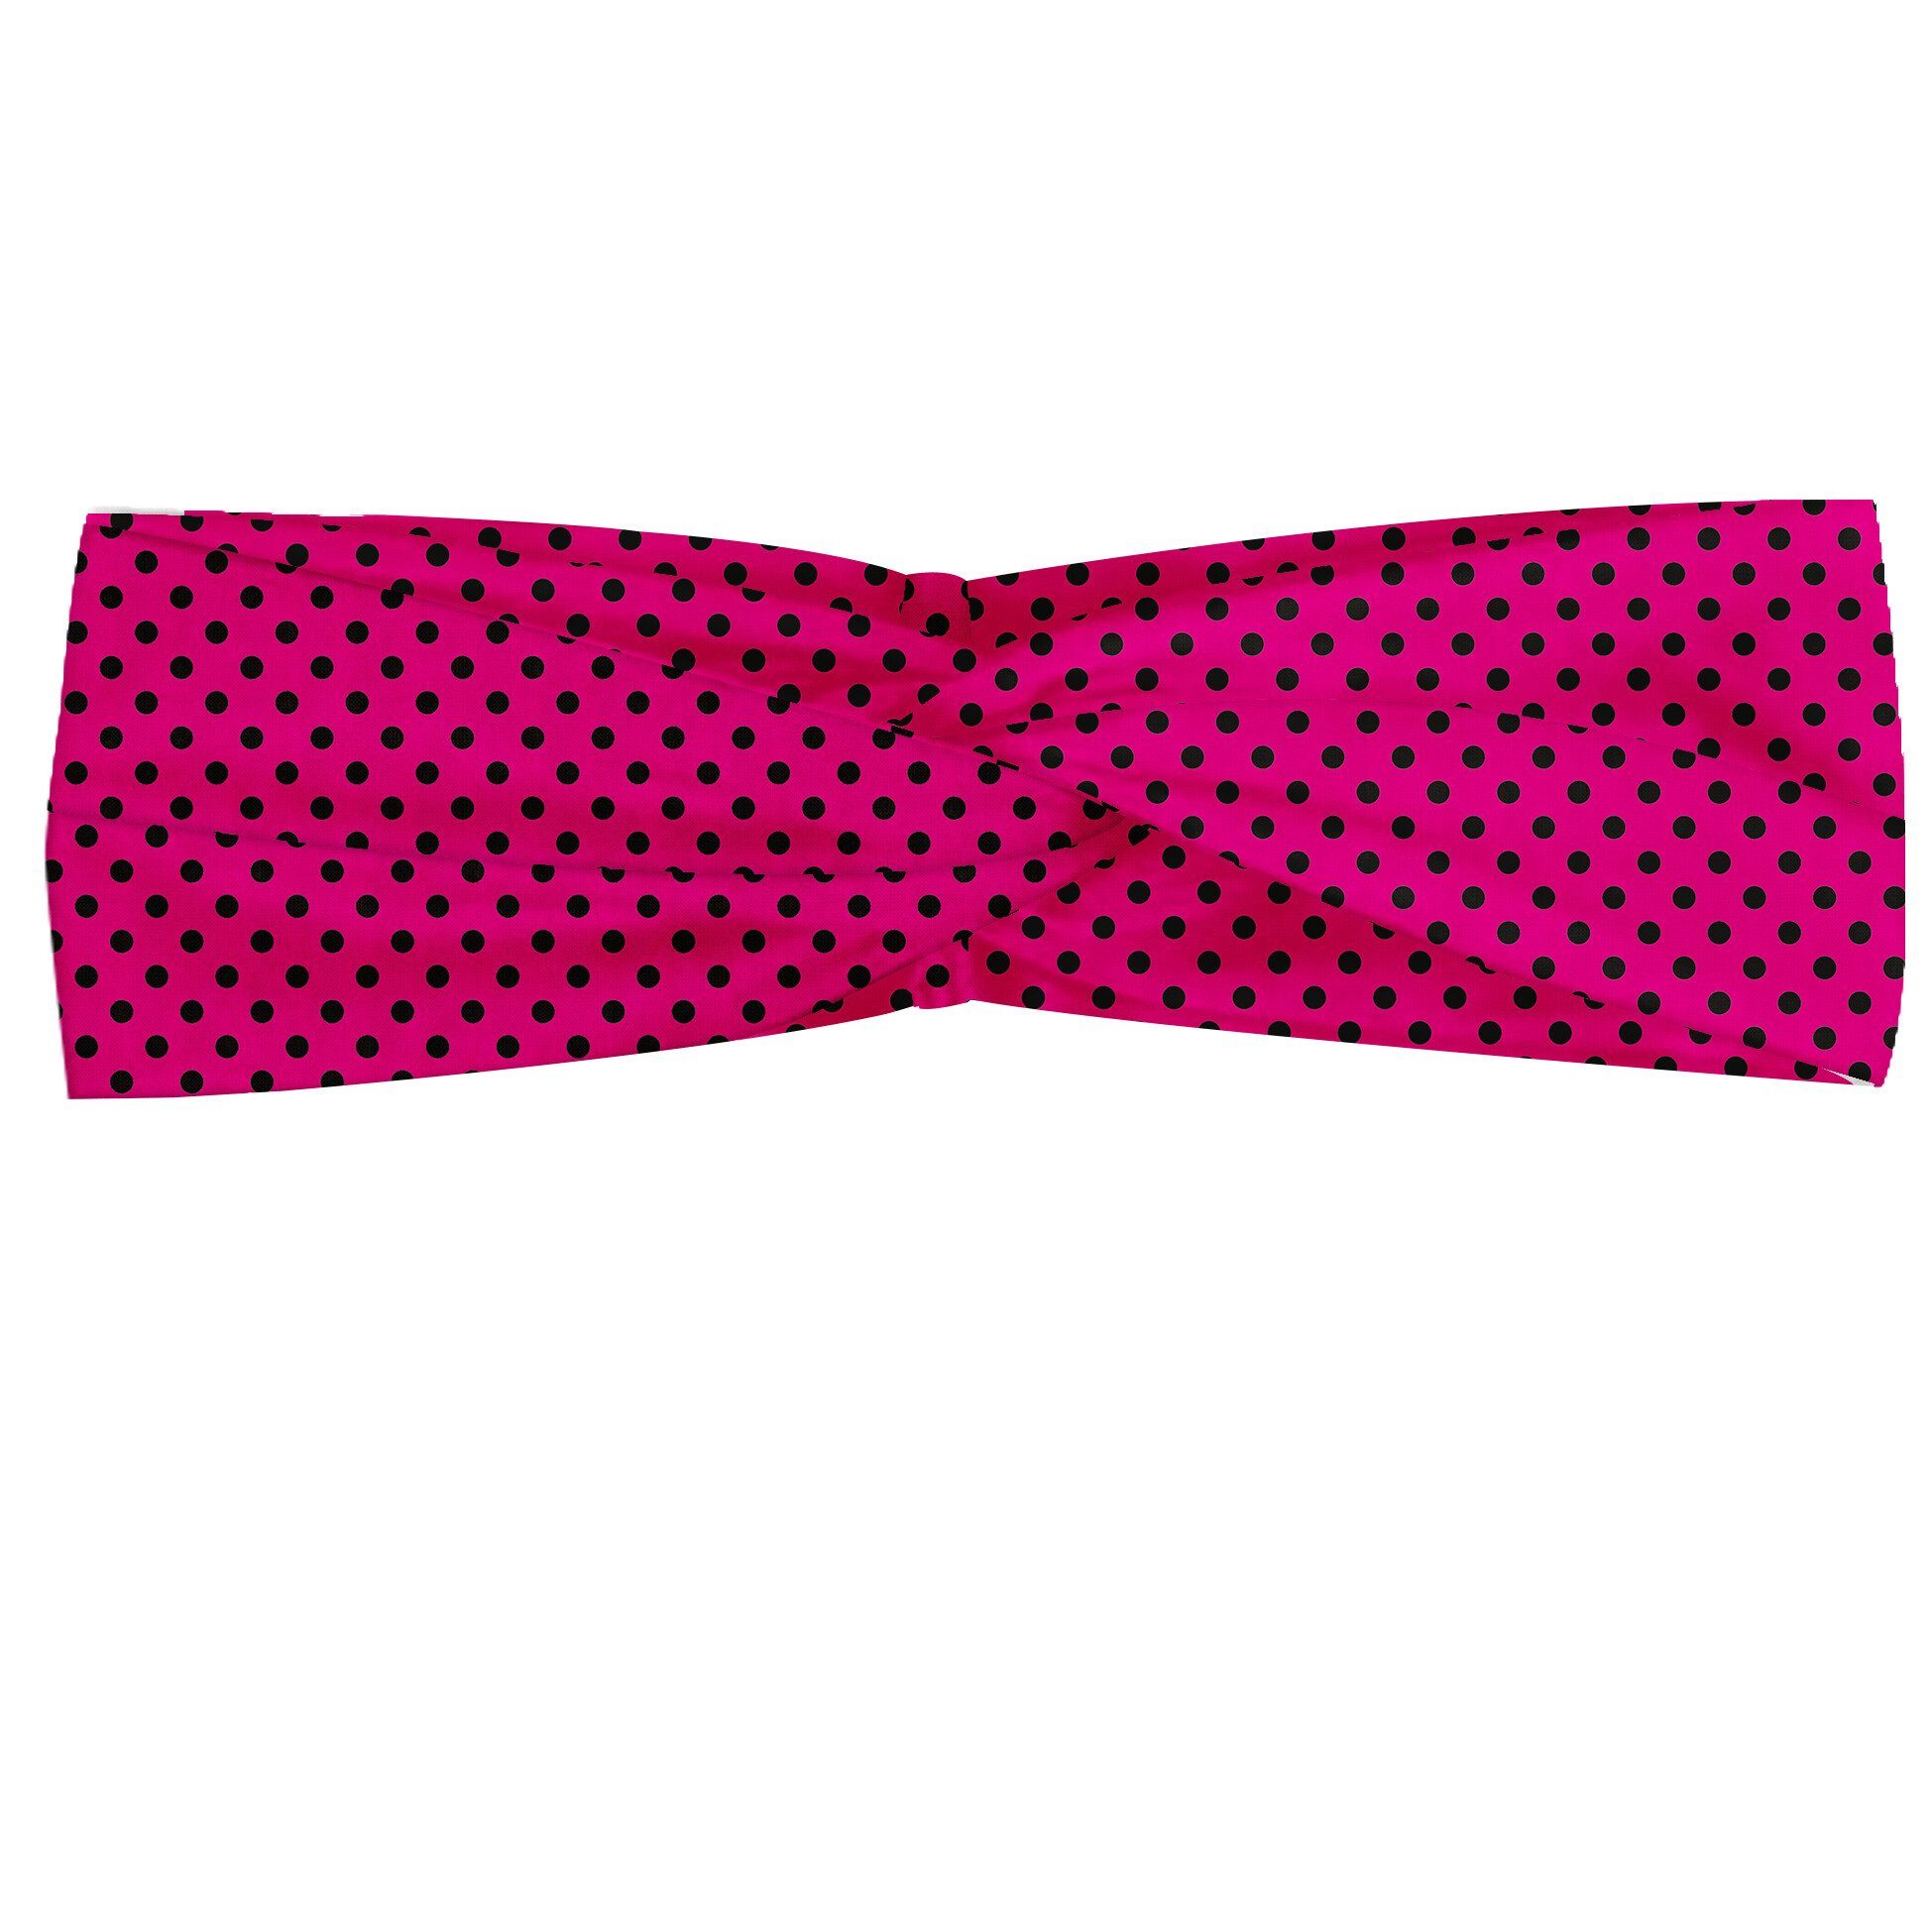 Abakuhaus Stirnband Elastisch und Angenehme alltags accessories Hot Pink Pop-Art inspiriert Dots